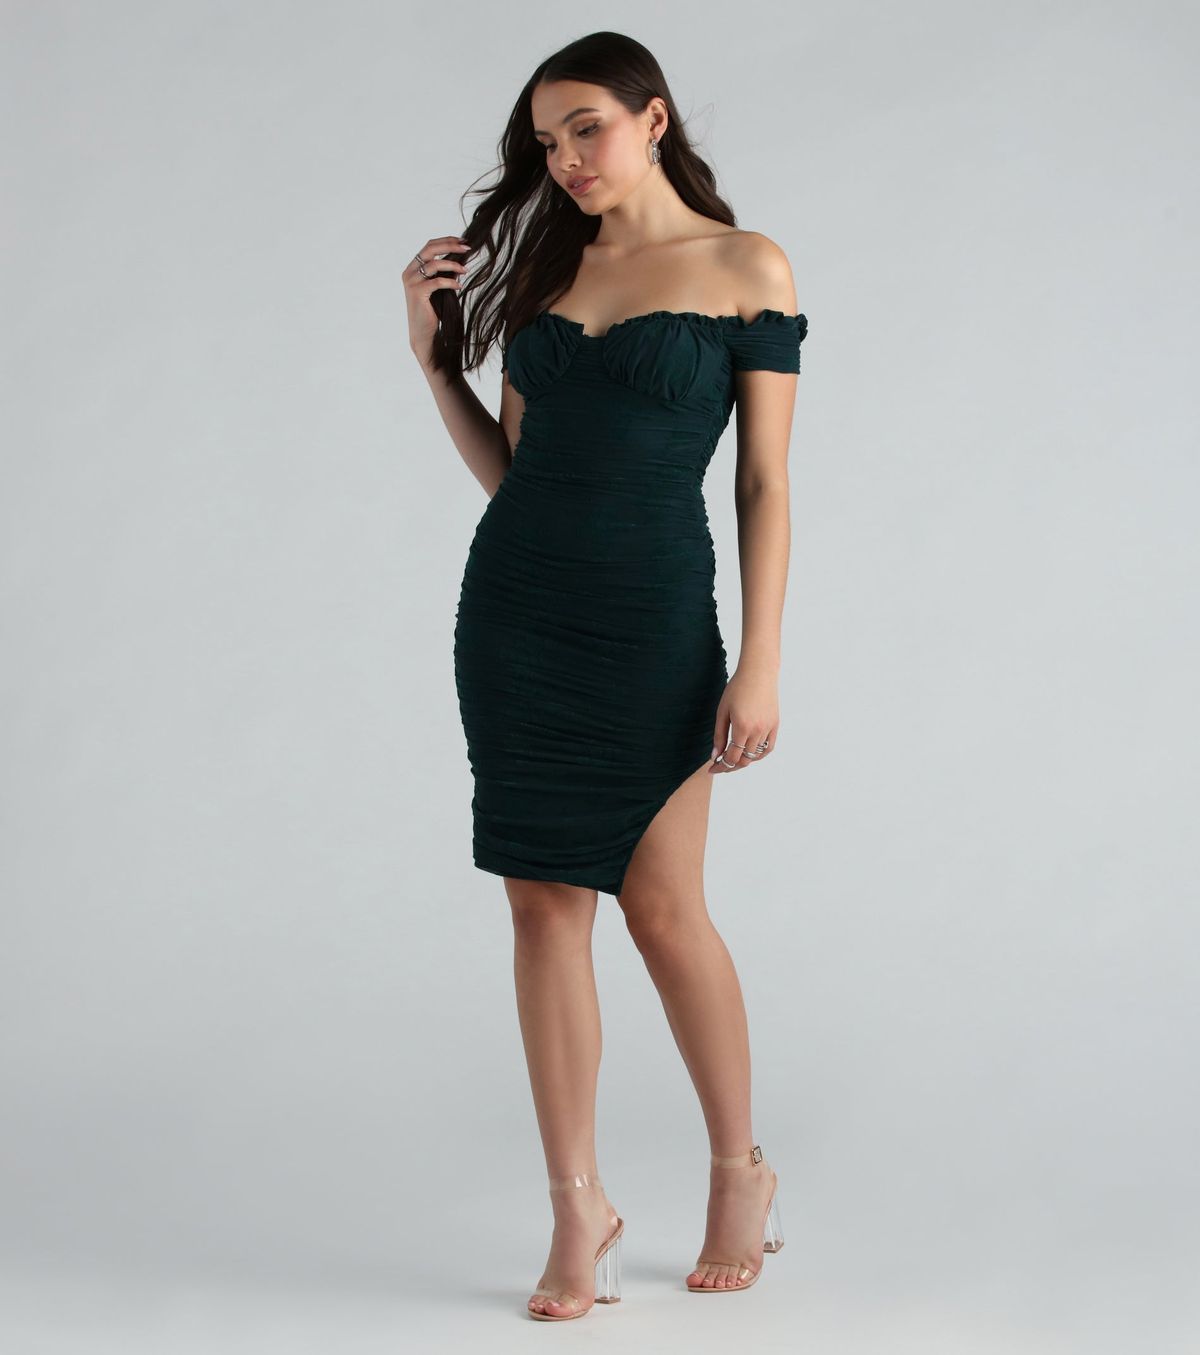 Style 05101-2563 Windsor Size S Prom Off The Shoulder Velvet Green Side Slit Dress on Queenly